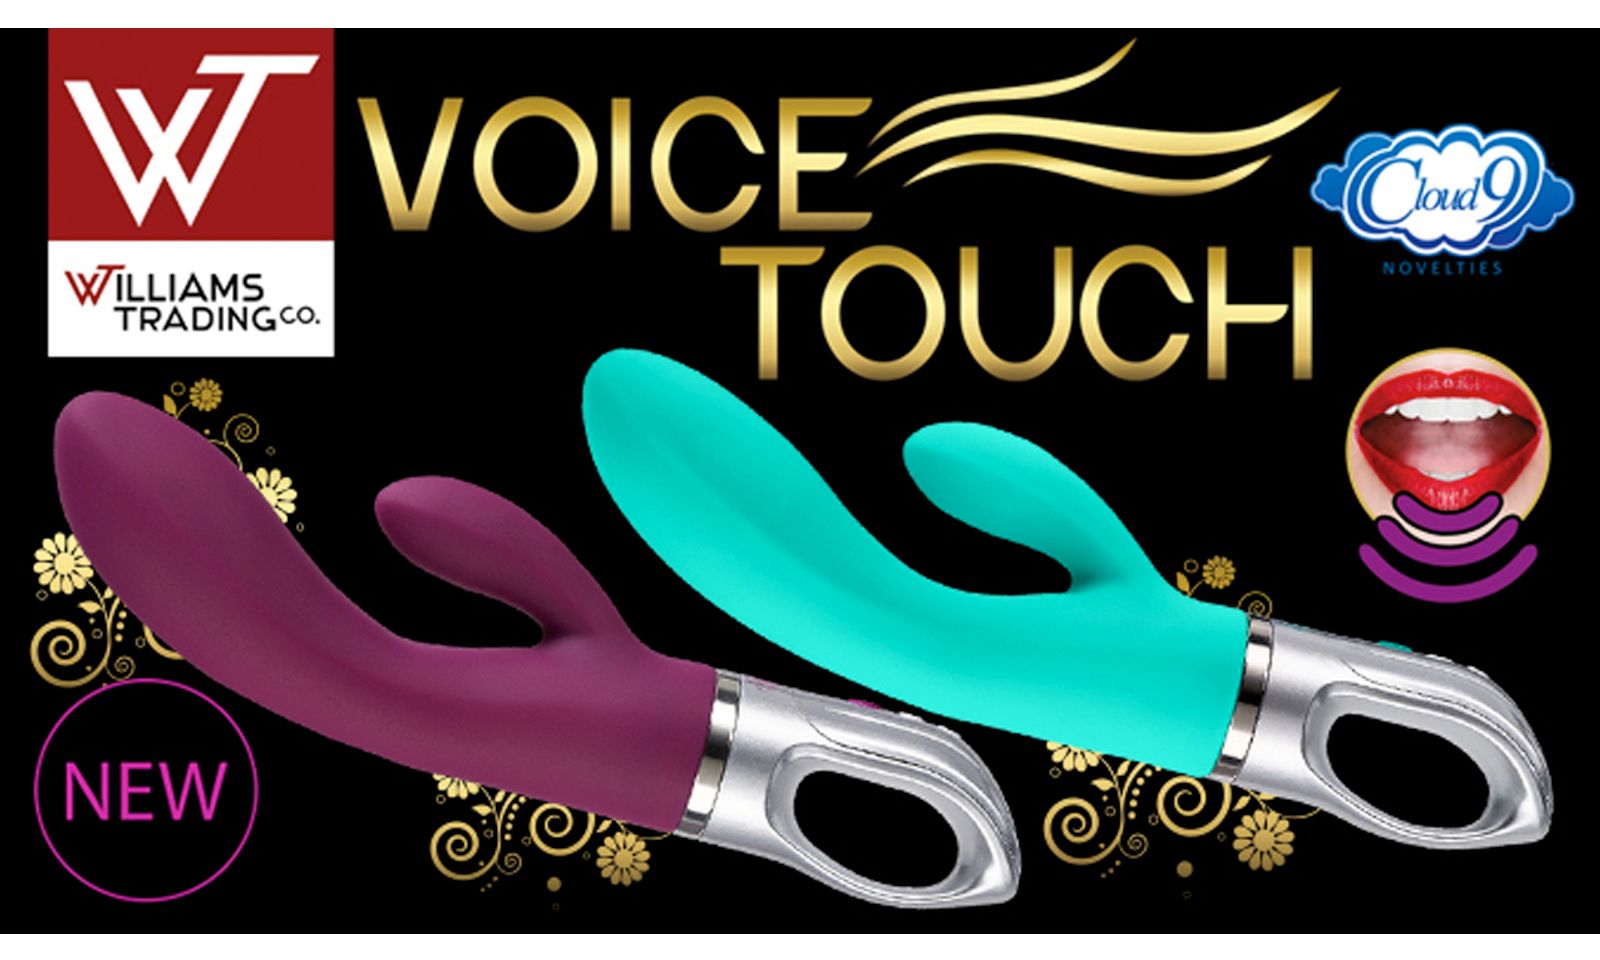 Voice Touch G Spot Rabbit  Debuts From Cloud 9 Novelties